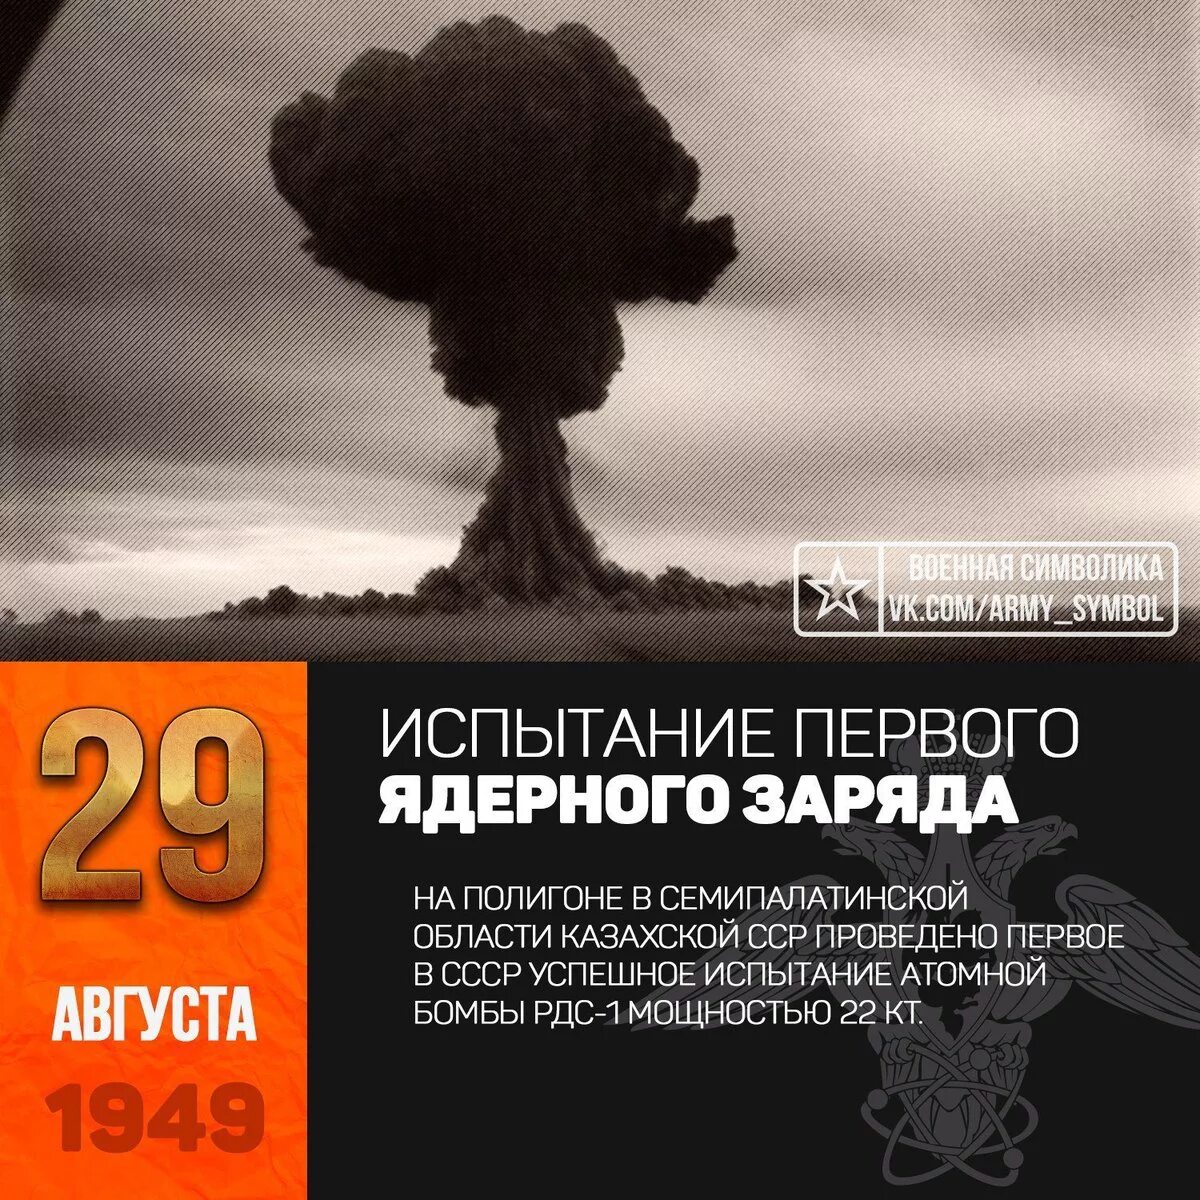 Советские испытания. 29 Августа 1949 испытание атомной бомбы в СССР. 29 Августа 1949 г испытание первой атомной бомбы в СССР РДС-1. 29 Августа 1949 года на Семипалатинском полигоне испытали РДС-1. Первая Советская атомная бомба РДС-1 взрыв.